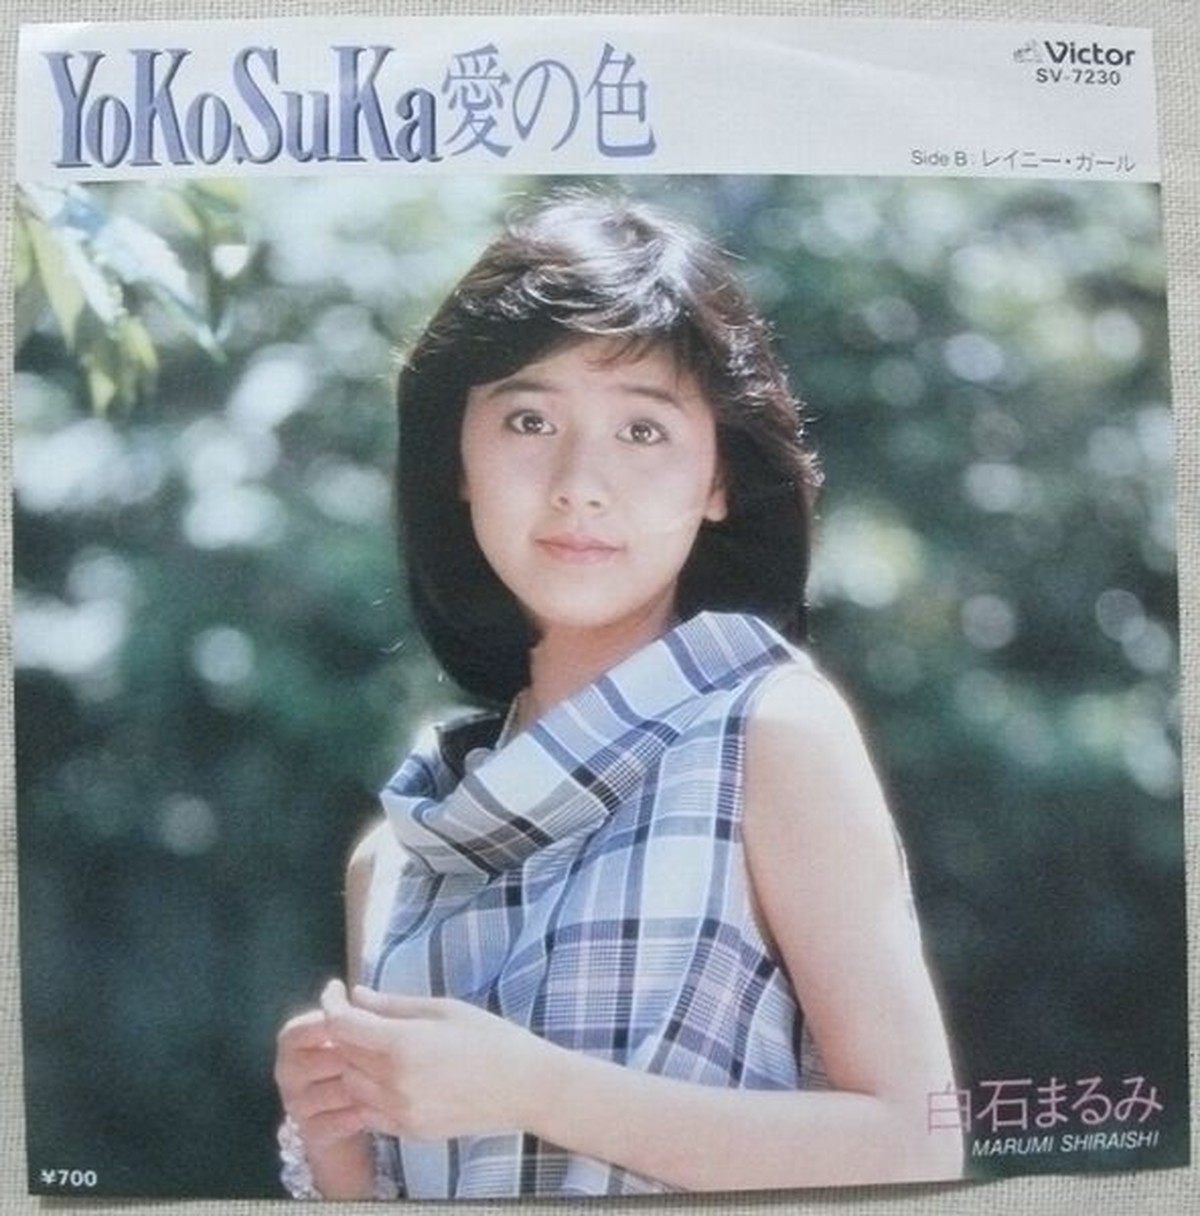 白石まるみ Yokosuka愛の色 Soul Respect Records